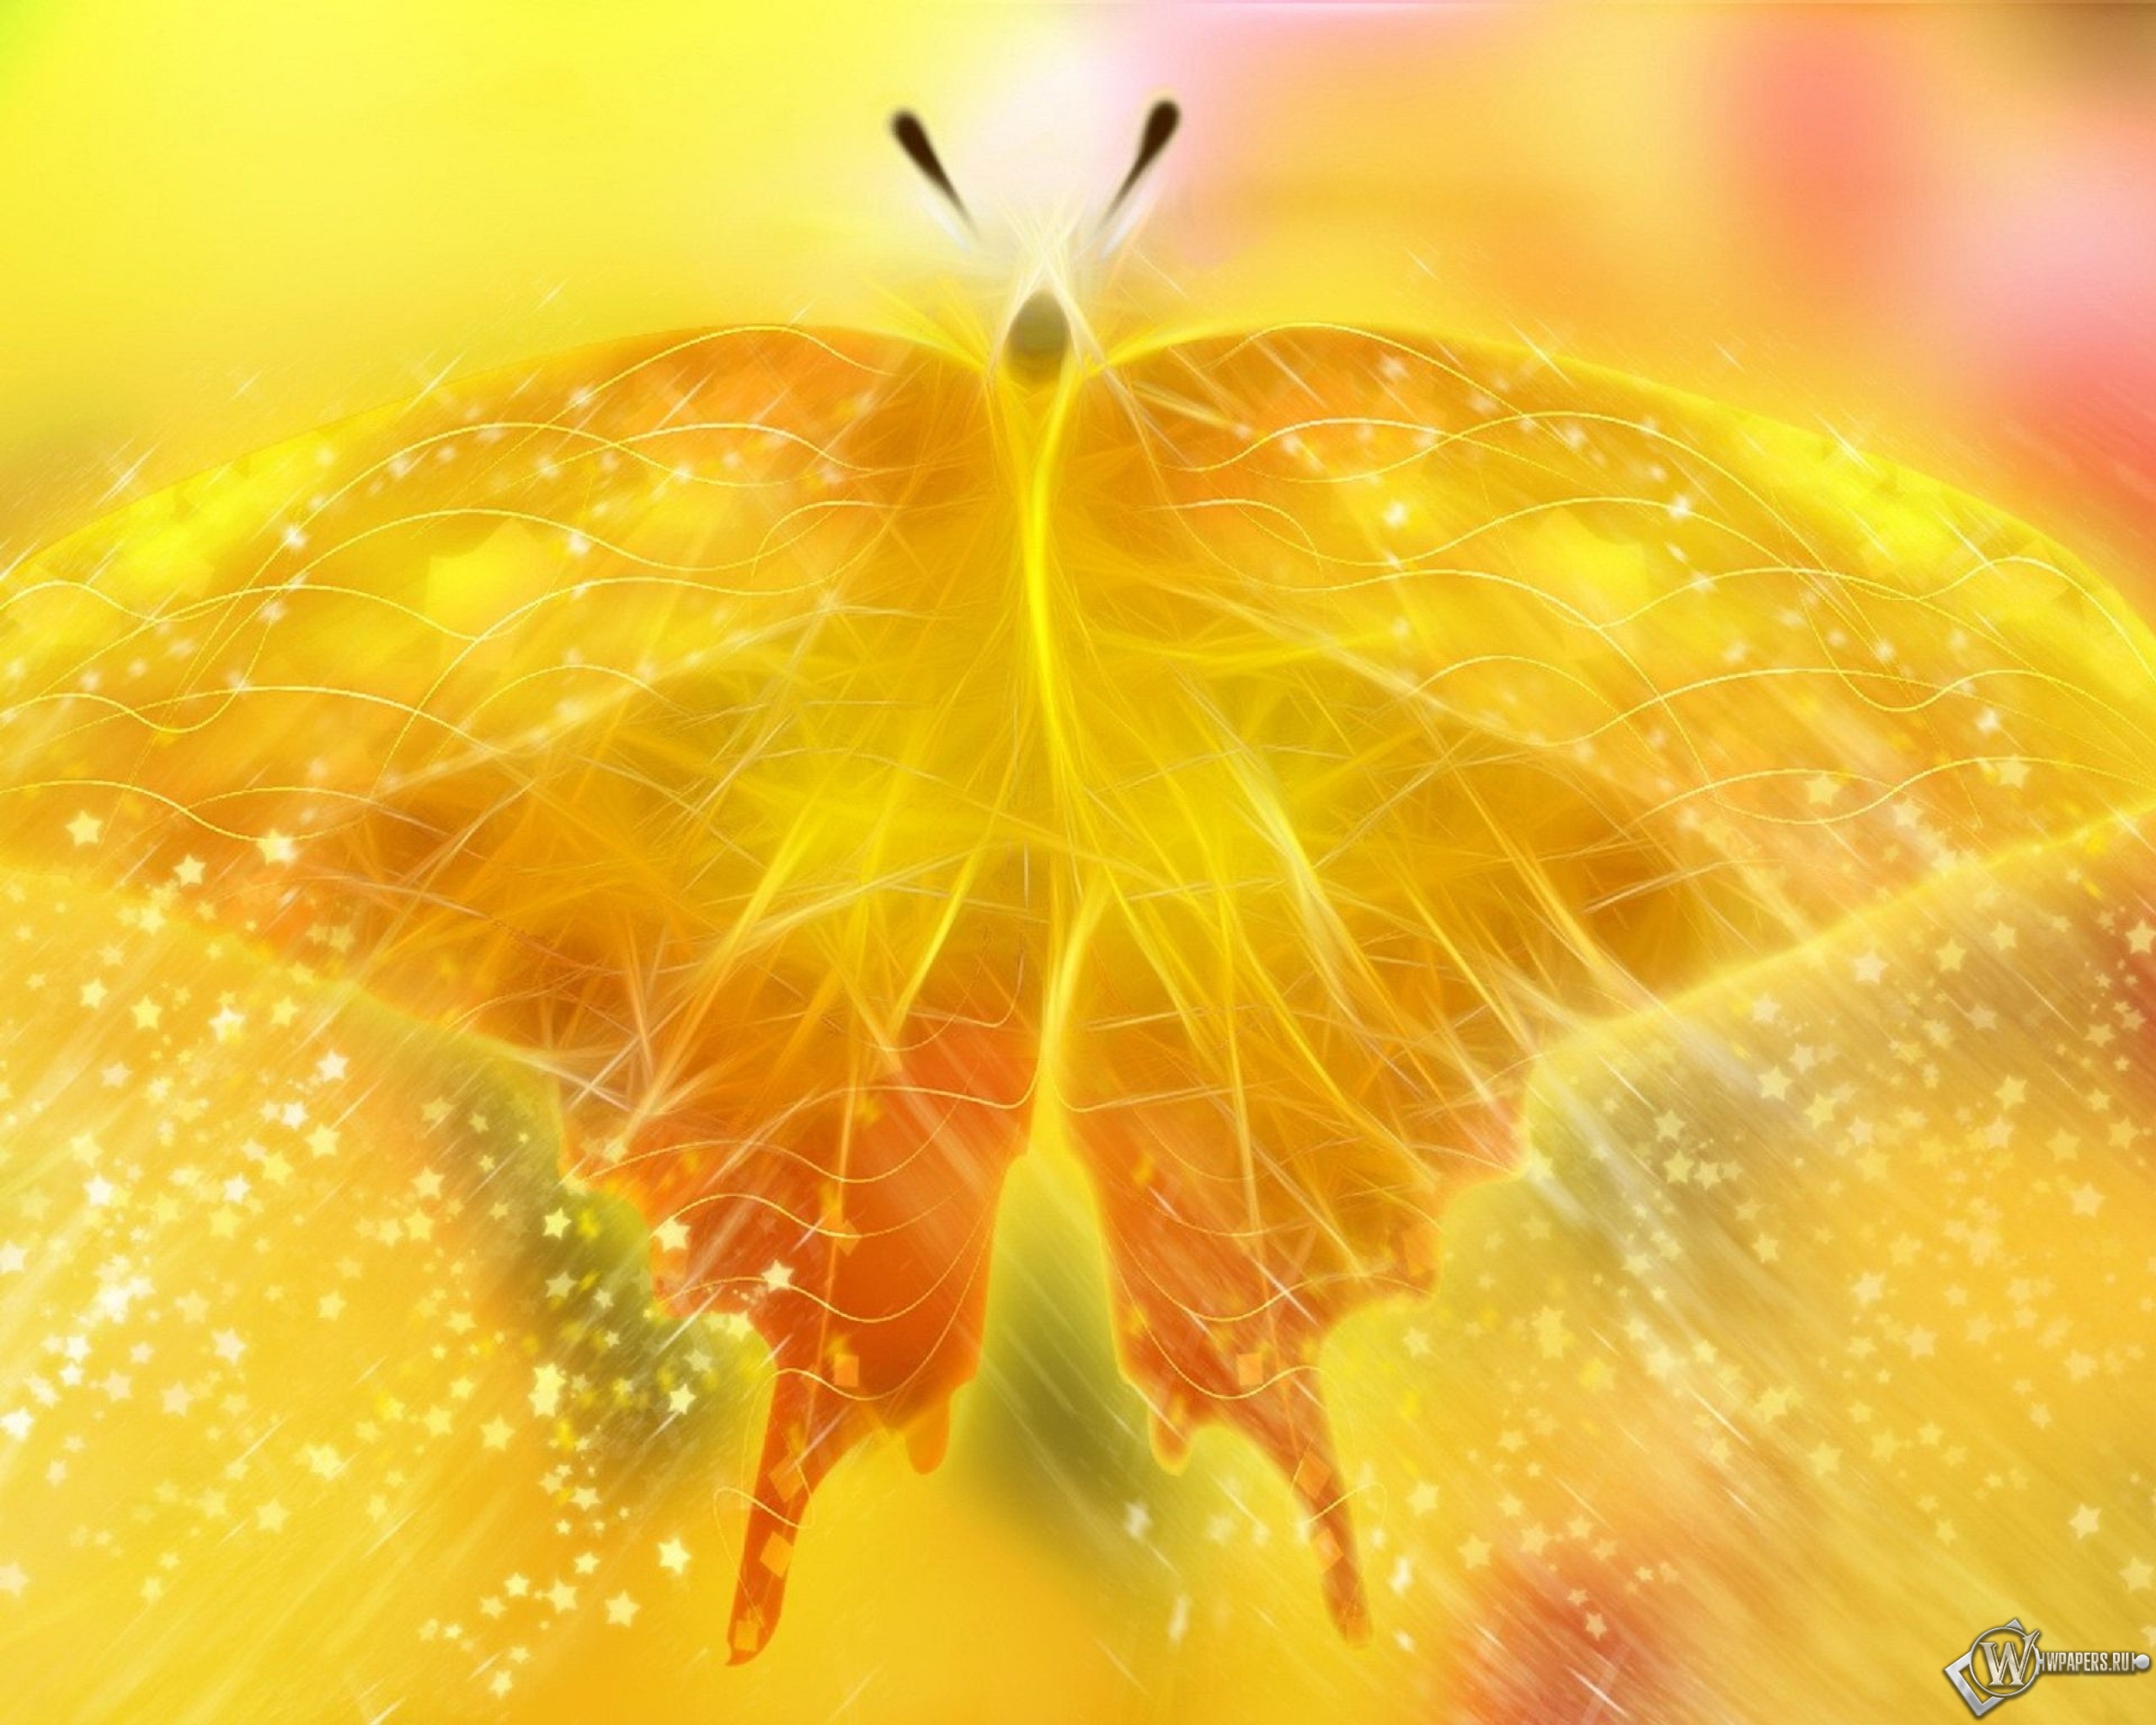 Обои, Жёлтая бабочка, Бабочка, Желтый, 2560x2048, картинки. 